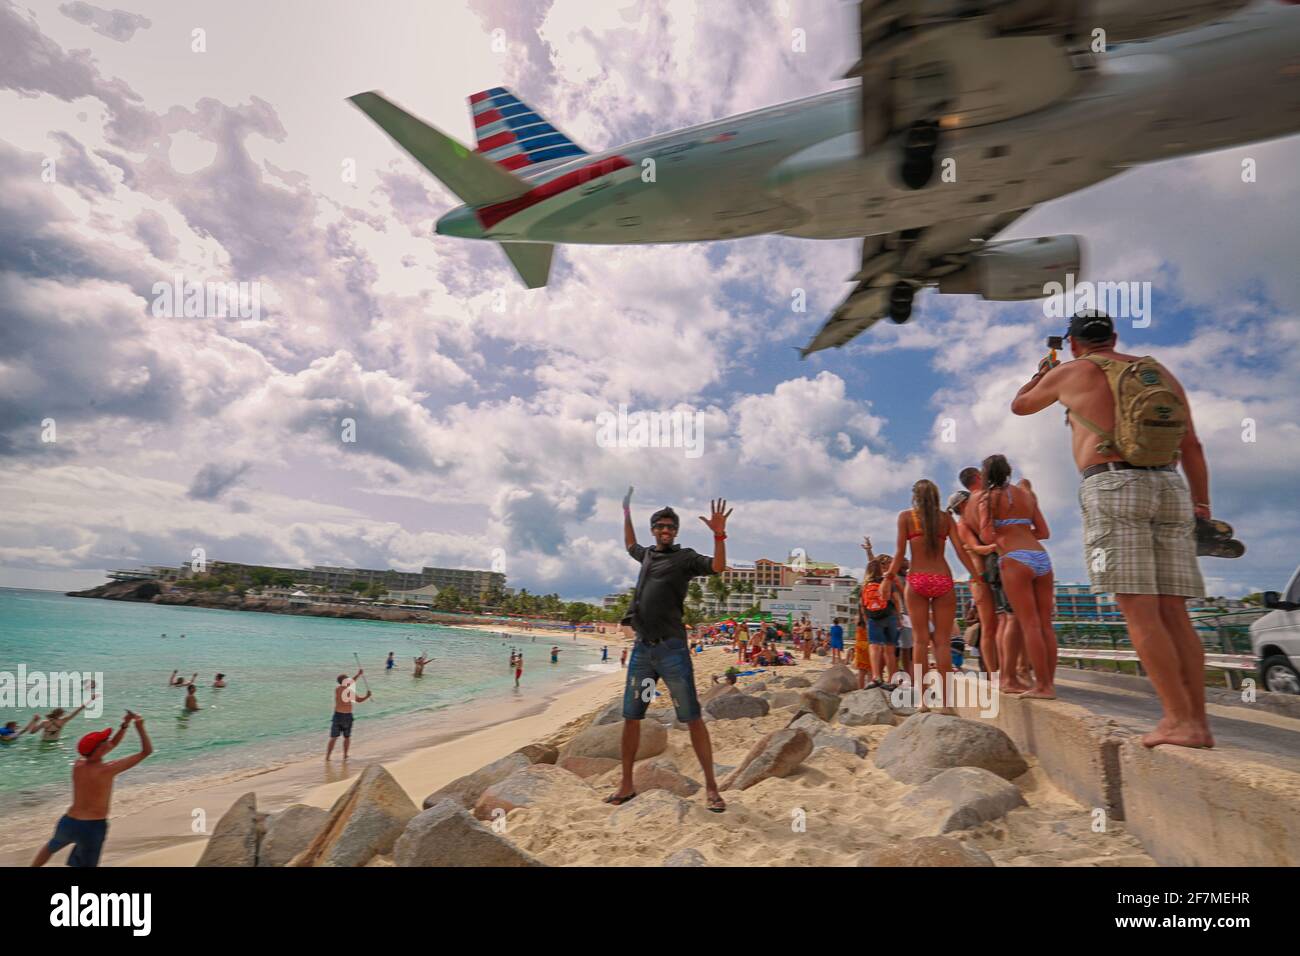 Hinter einem jungen Mann hebt das Flugzeug auf dem Hintergrund ab. Ein junger Mann steht und posiert am Strand in der Nähe des Flughafens und spreizte die Arme zum Fliegen. Stockfoto